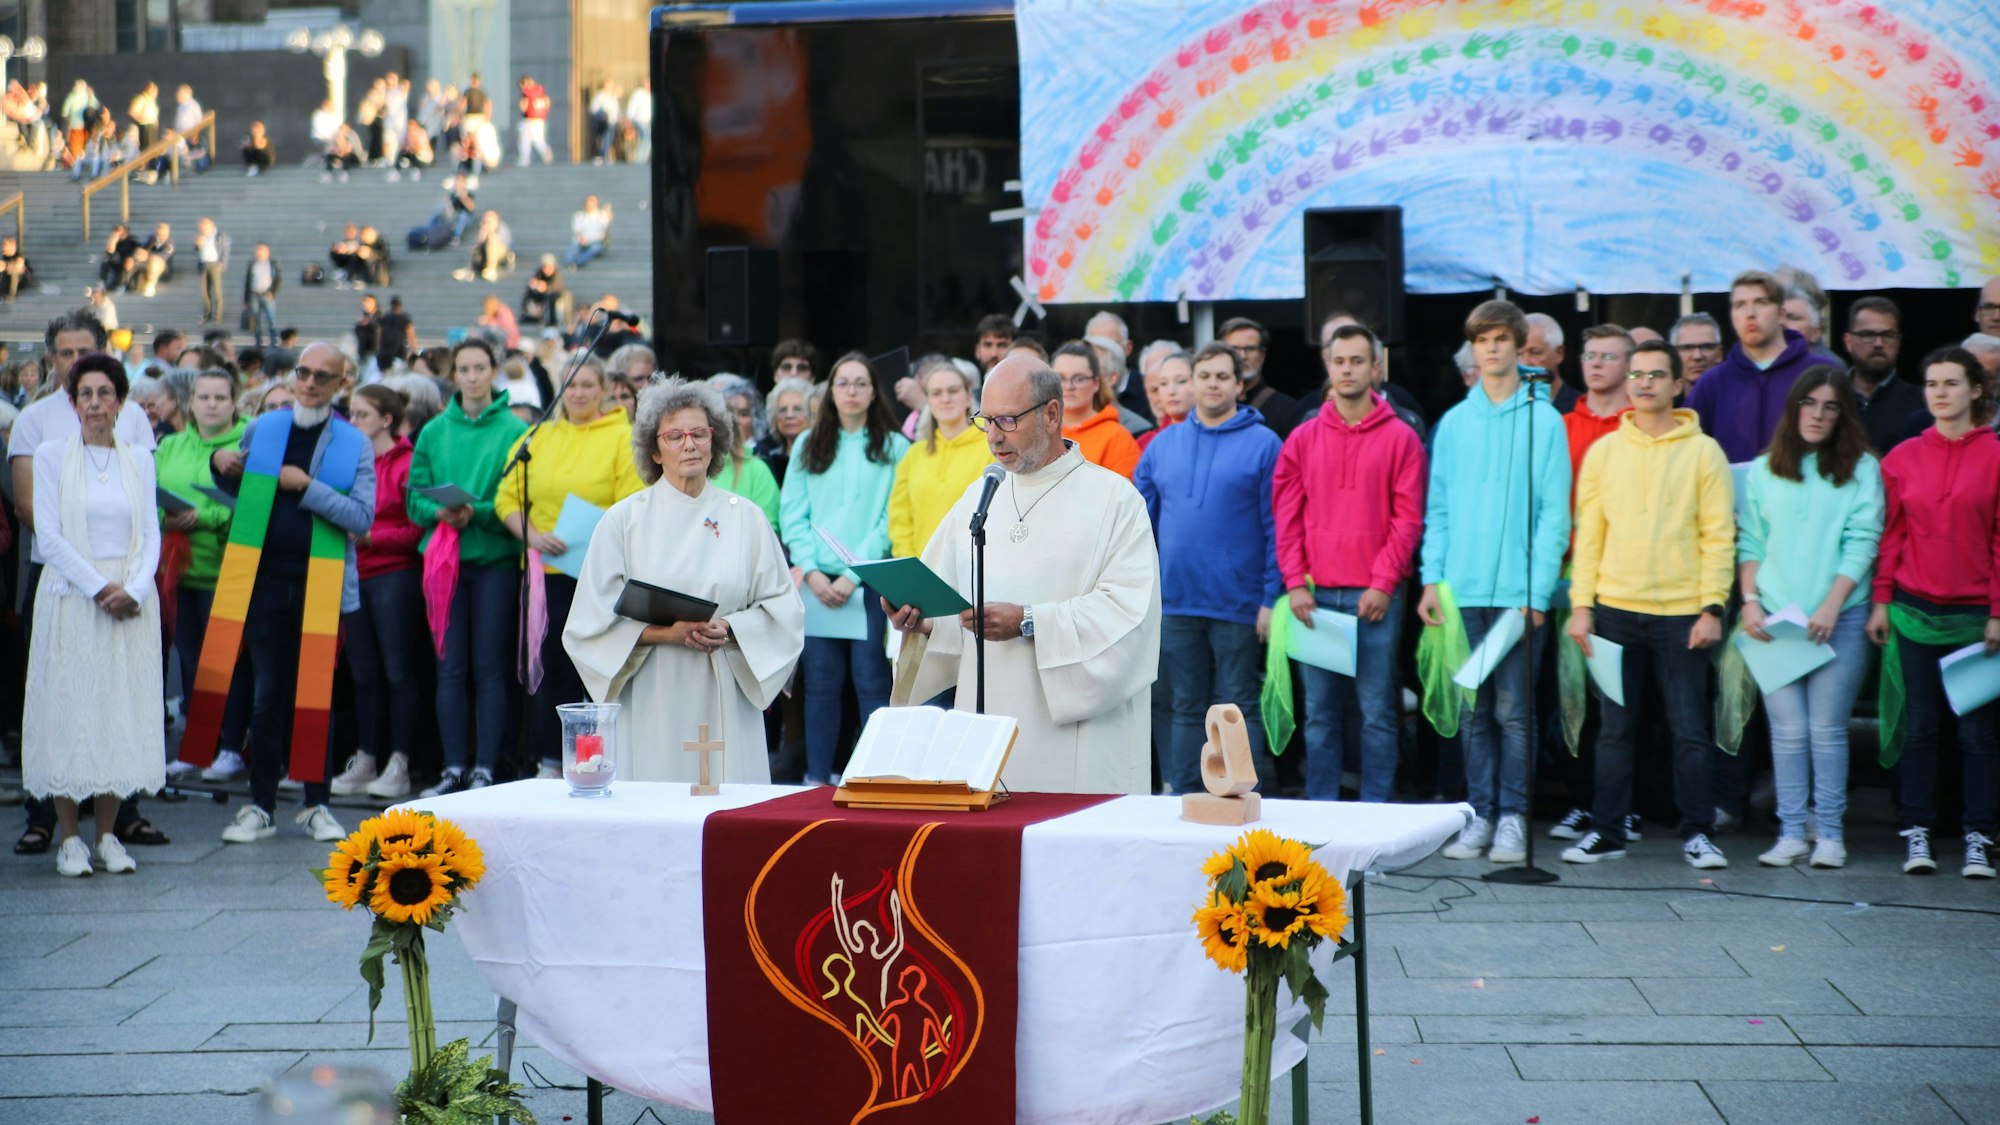 Pastoralreferent Manfred Becker-Irrnen während seiner Predigt beim Gottesdienst "Segen für alle" am Kölner Dom. Im Hintergrund der Jugendchors St. Stephan.